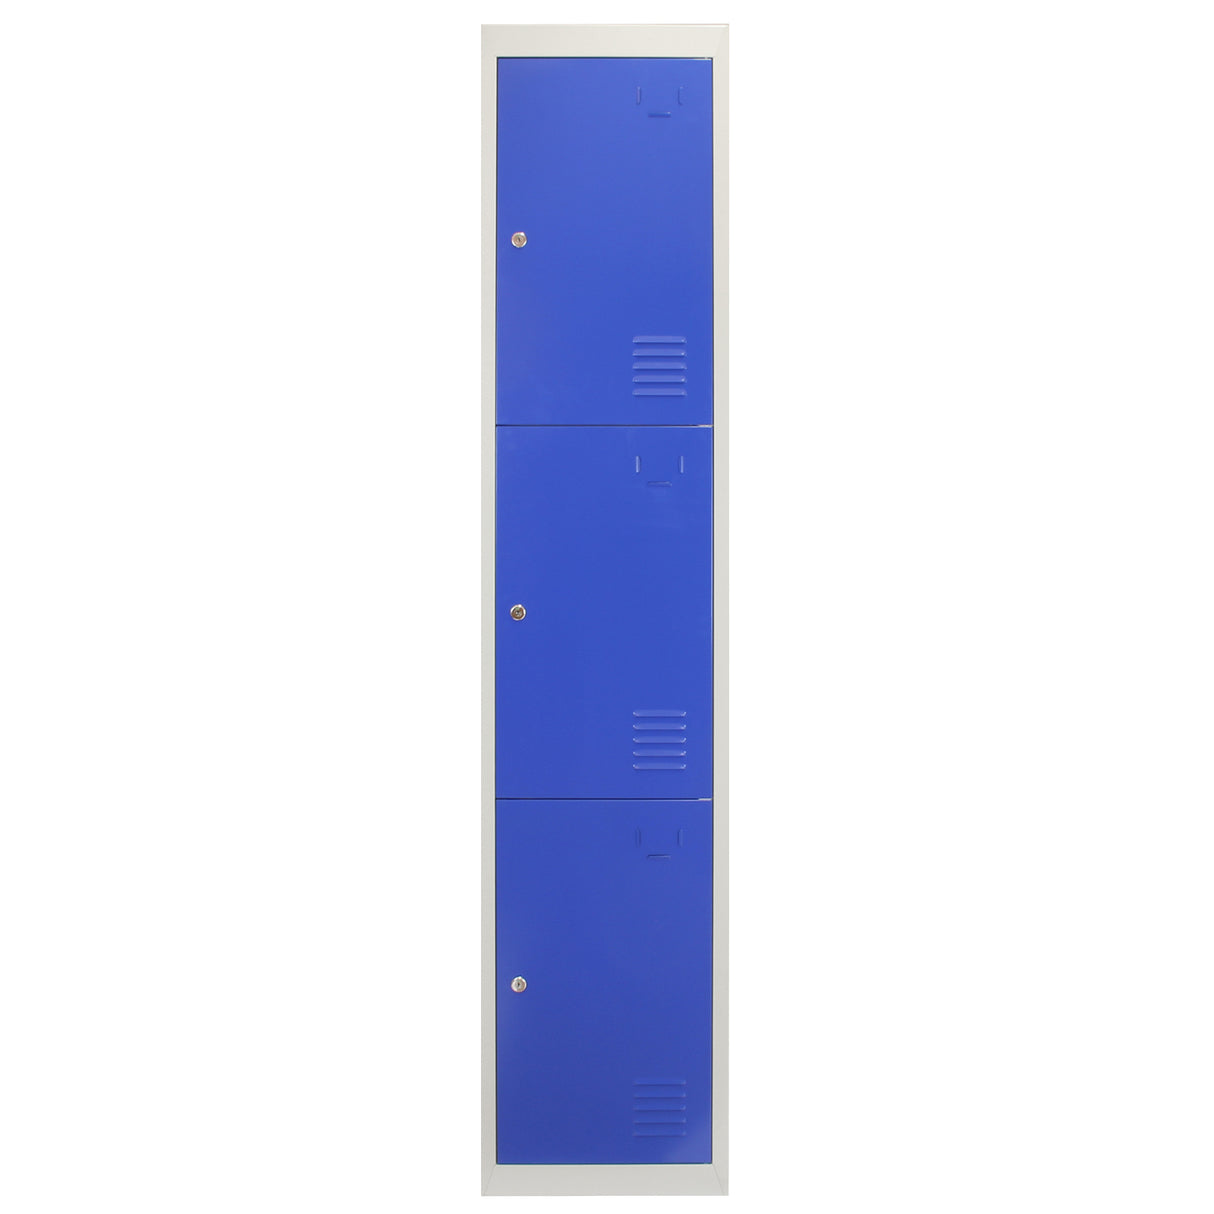 3 x Metal Storage Lockers - Three Doors, Blue - Flatpack